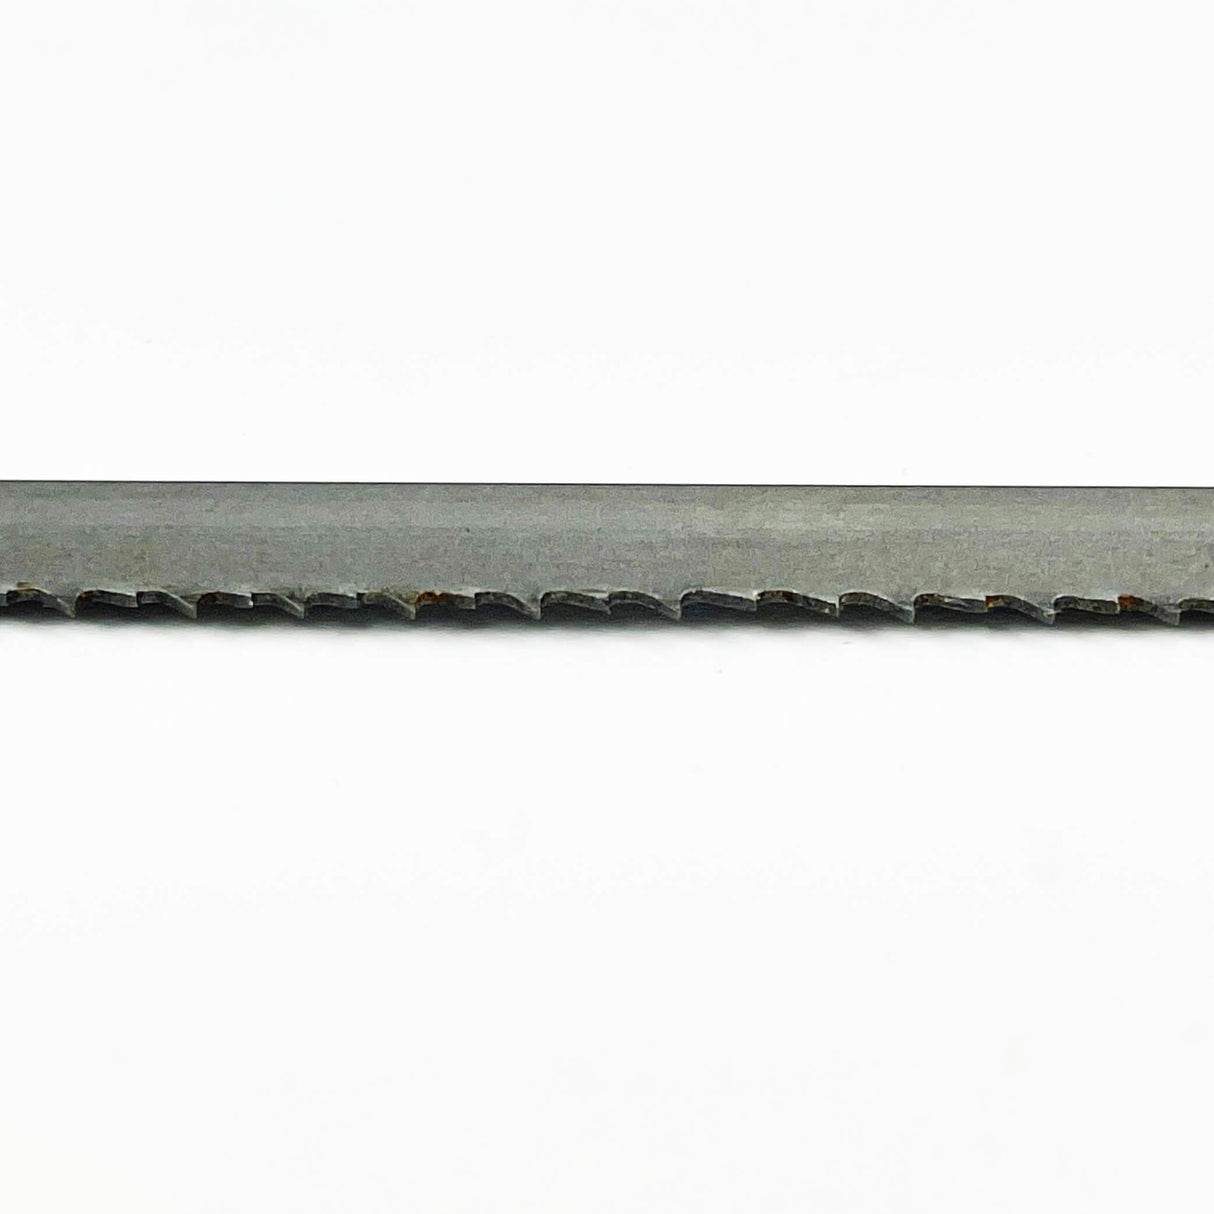 Sega a nastro bimetallica COBALT M42 da 1830 mm di lunghezza x 13 mm di larghezza – Confezione da 2 lame